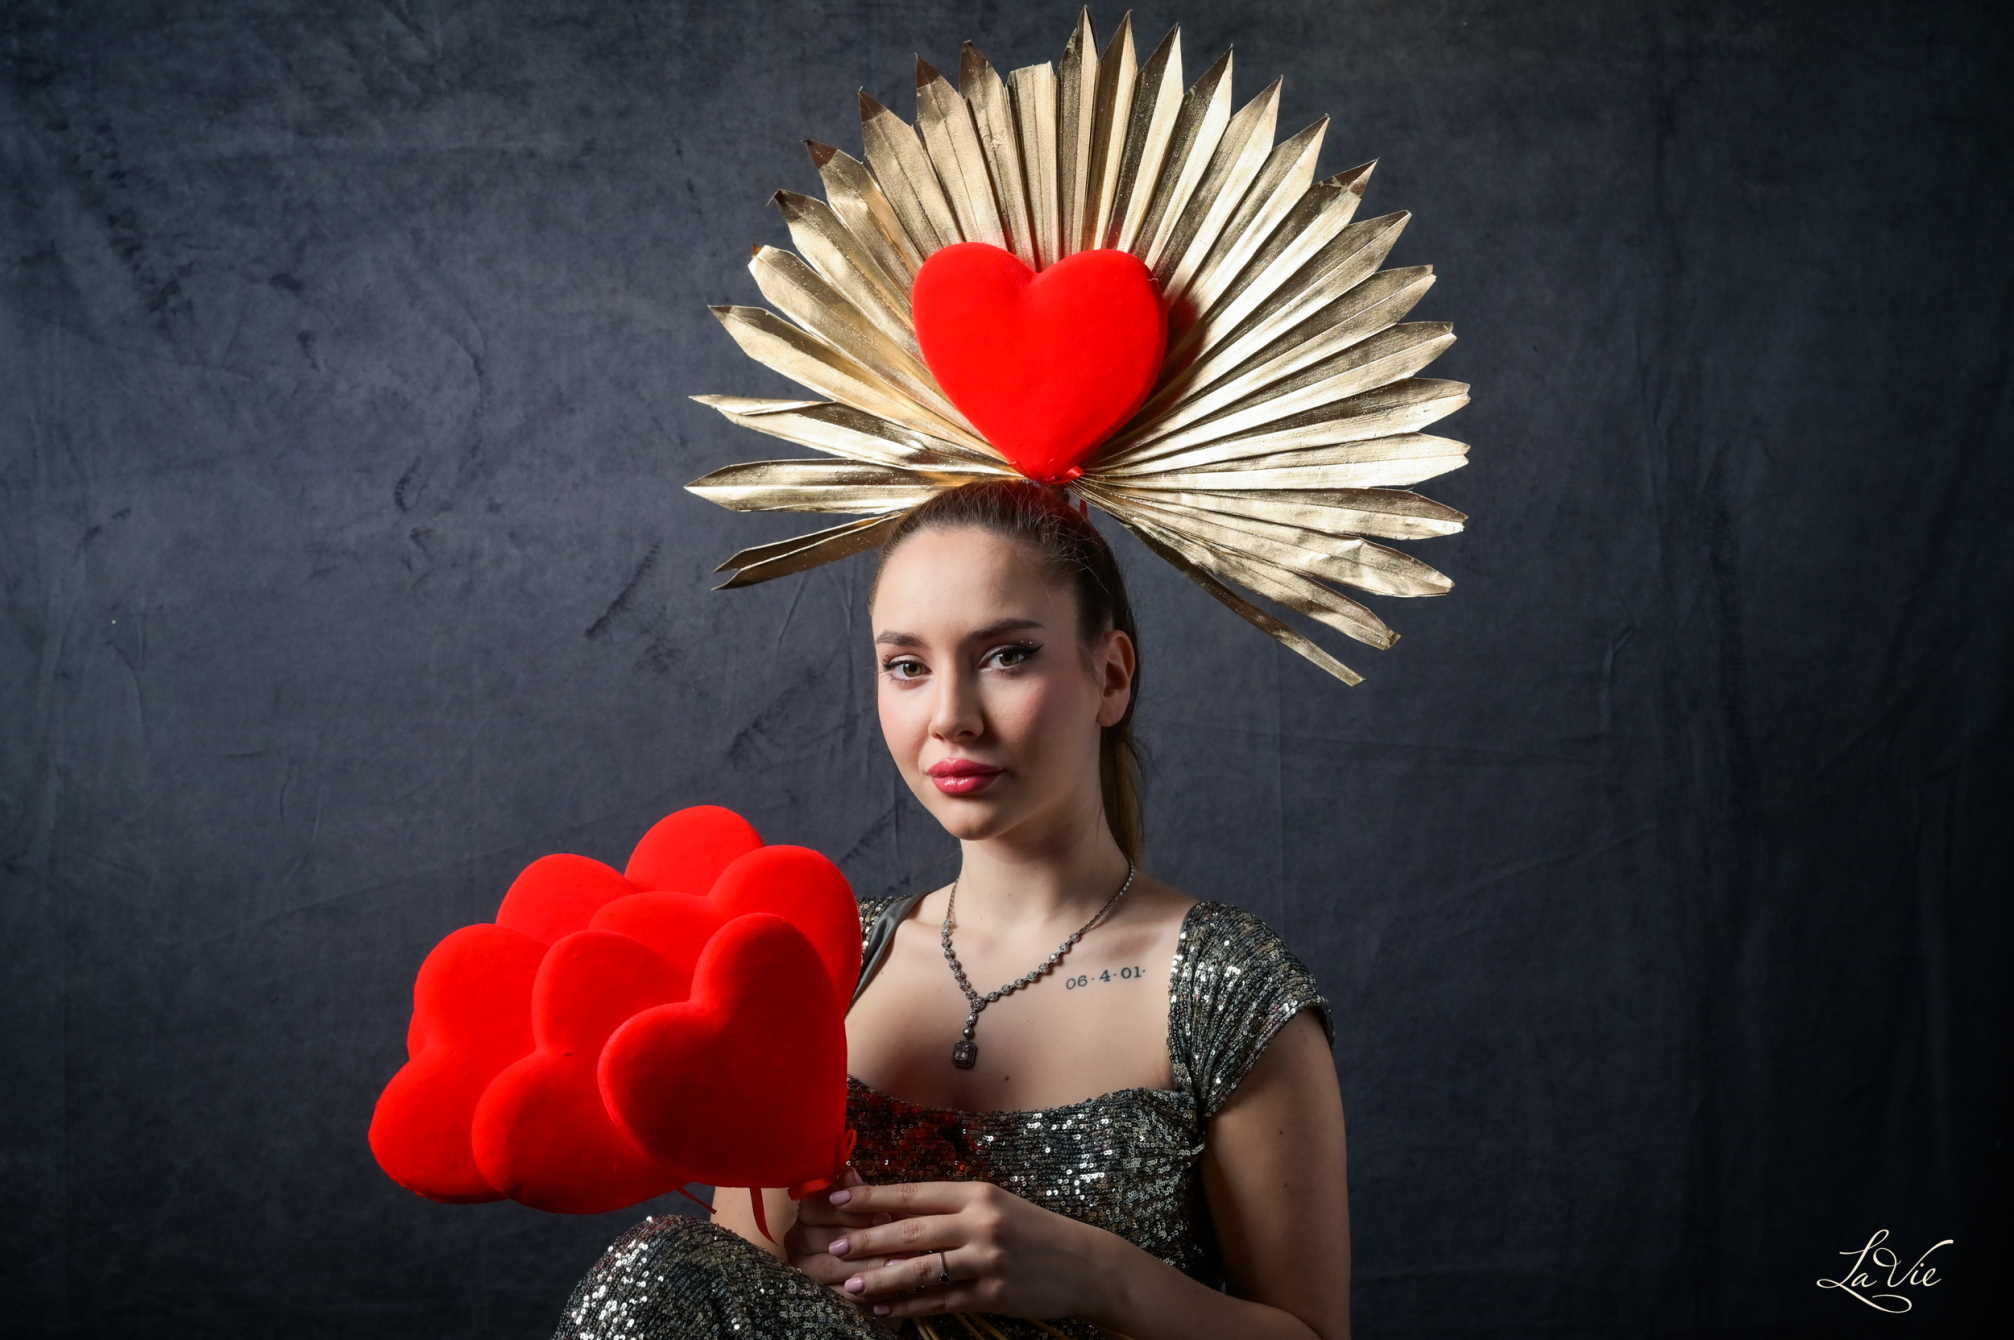 LAB9 floral design predstavlja novi editorijal za Valentinovo: "Love is in the air"